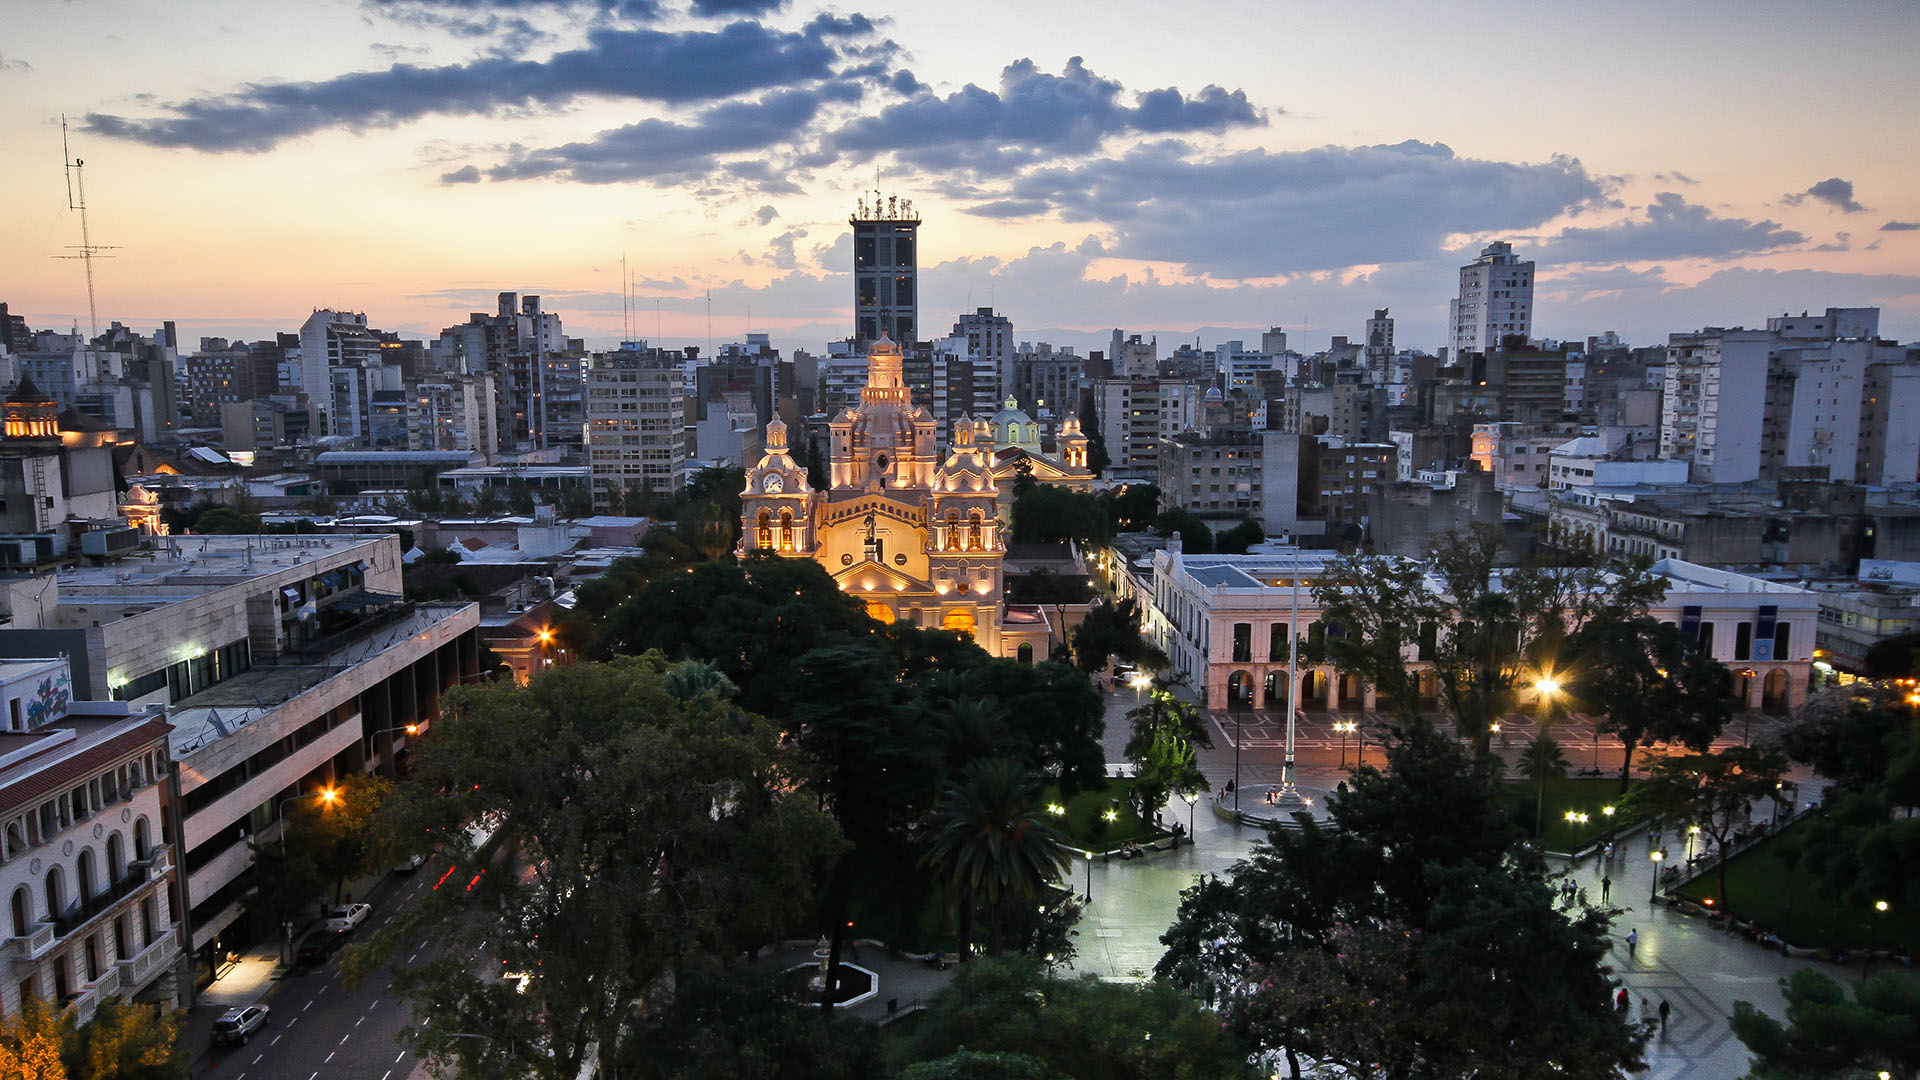 La ciudad de Córdoba está a un paso de las sierras y ostenta múltiples espacios diseñados para el coworking (Crédito Getty Images)